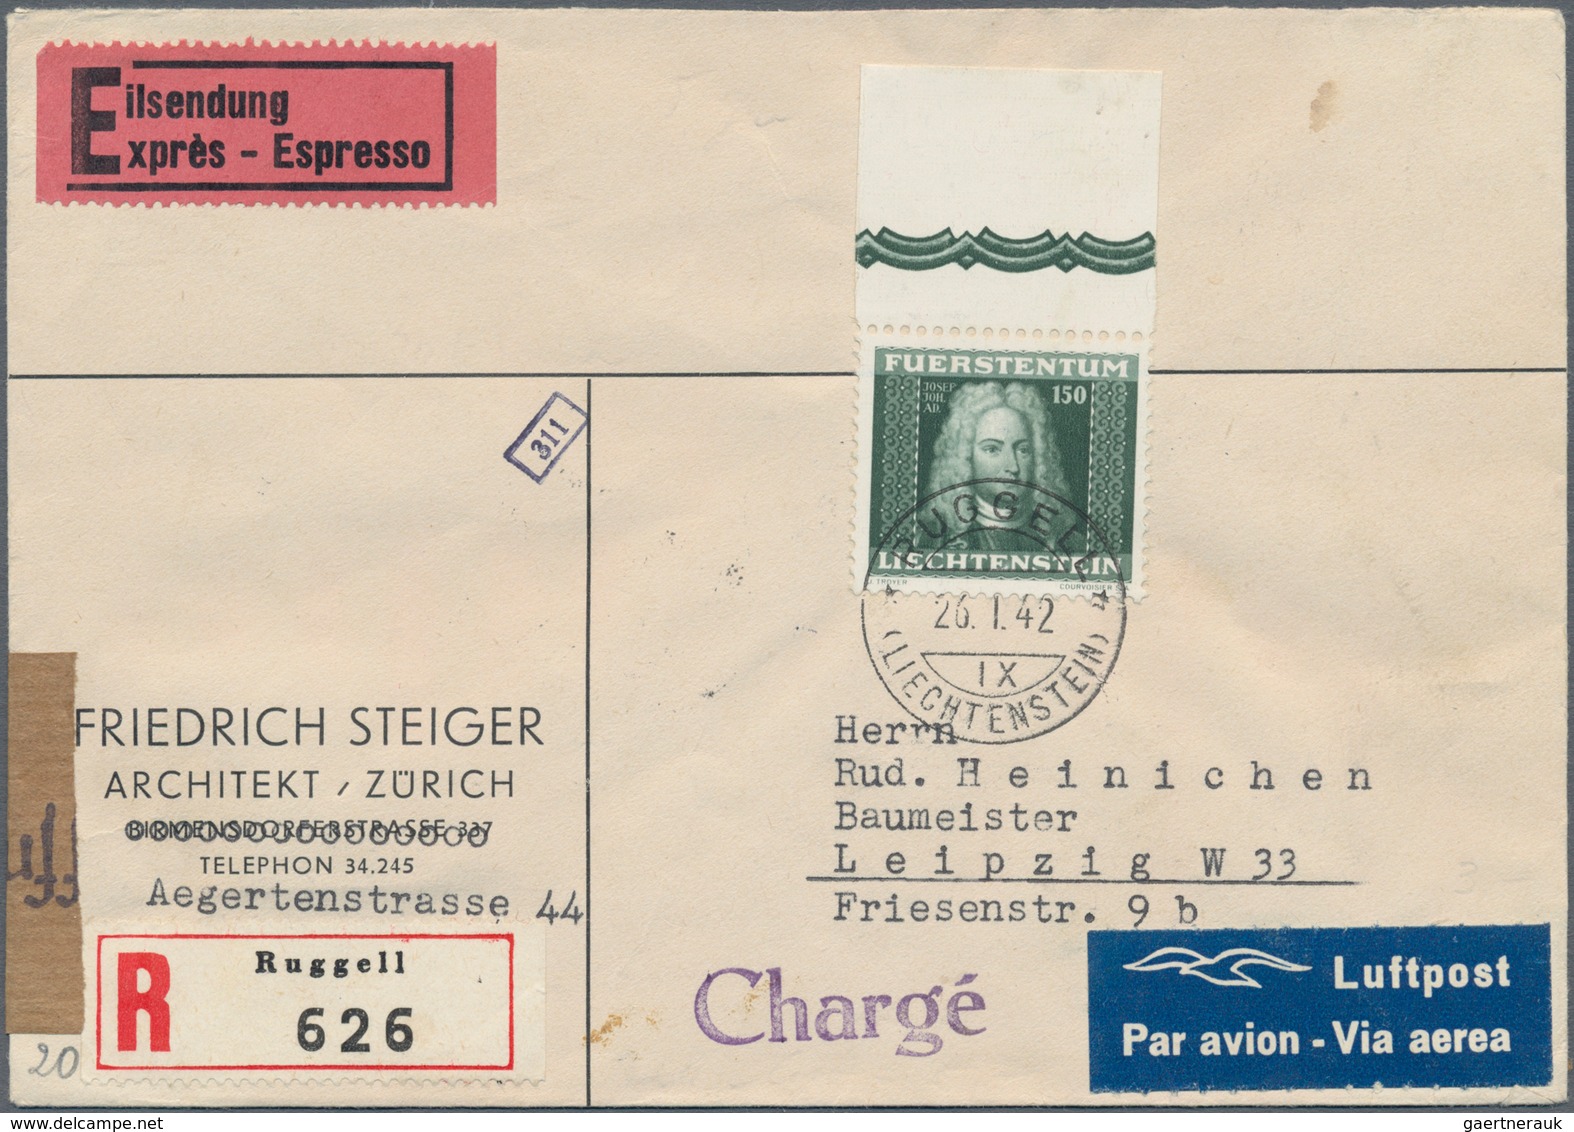 Liechtenstein: 1920/66, Posten von ca. 30 Briefe, AK und gebrauchten Ganzsachen, dabei gute Bild-Gs.